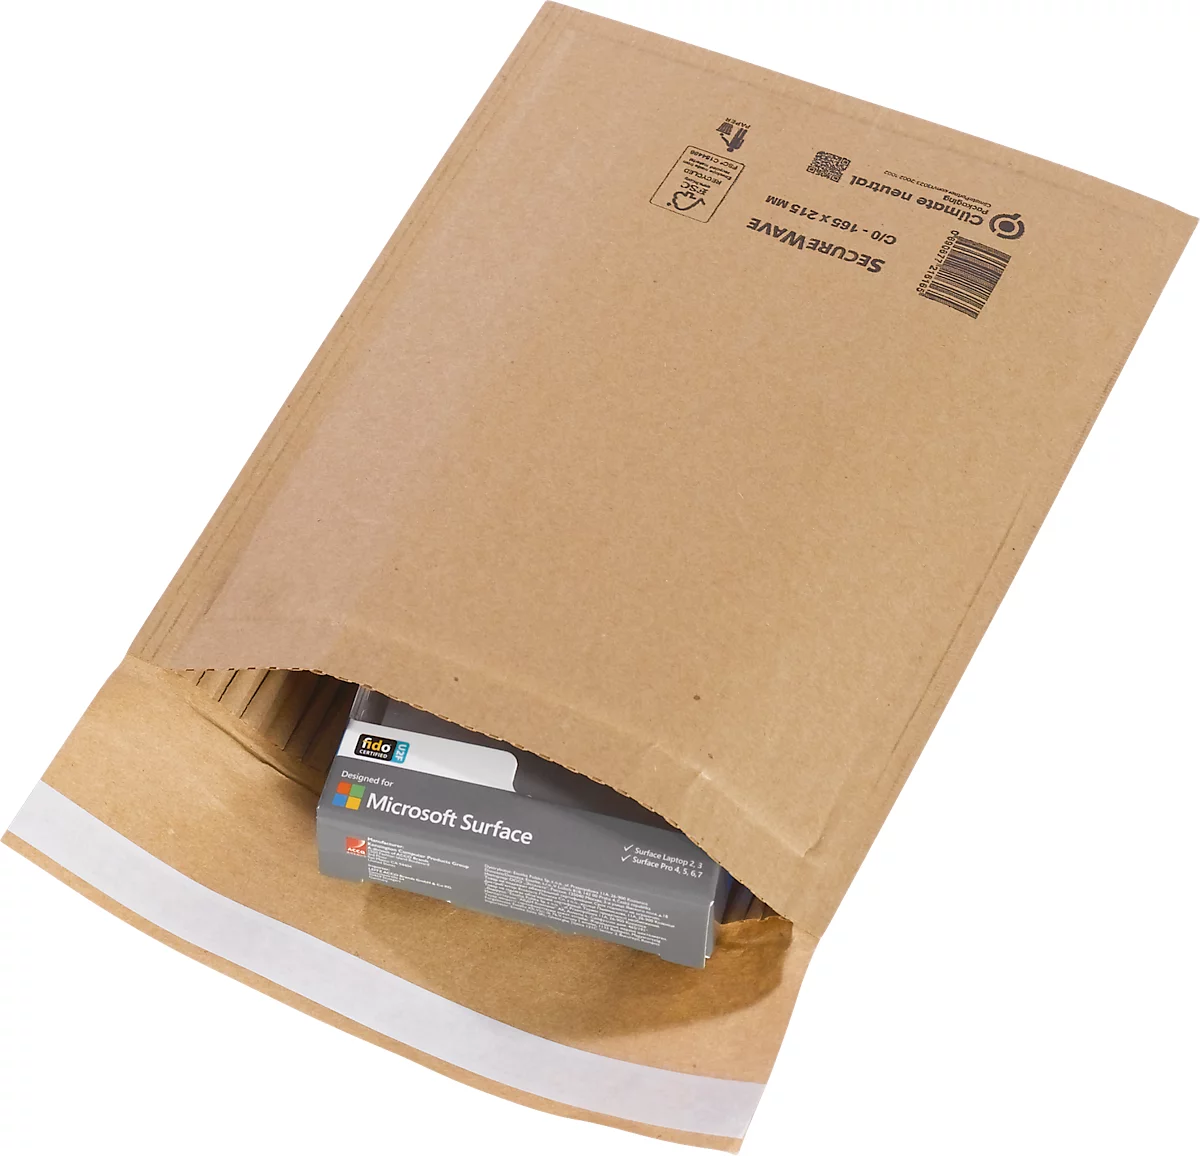 Sobres reciclados MD SecureWave Securepack, forrados de papel, adhesivo sensible a la presión, neutros desde el punto de vista climático, papel 100% reciclado FSC, tamaño C/0, 165 x 215 mm, 150 unidades